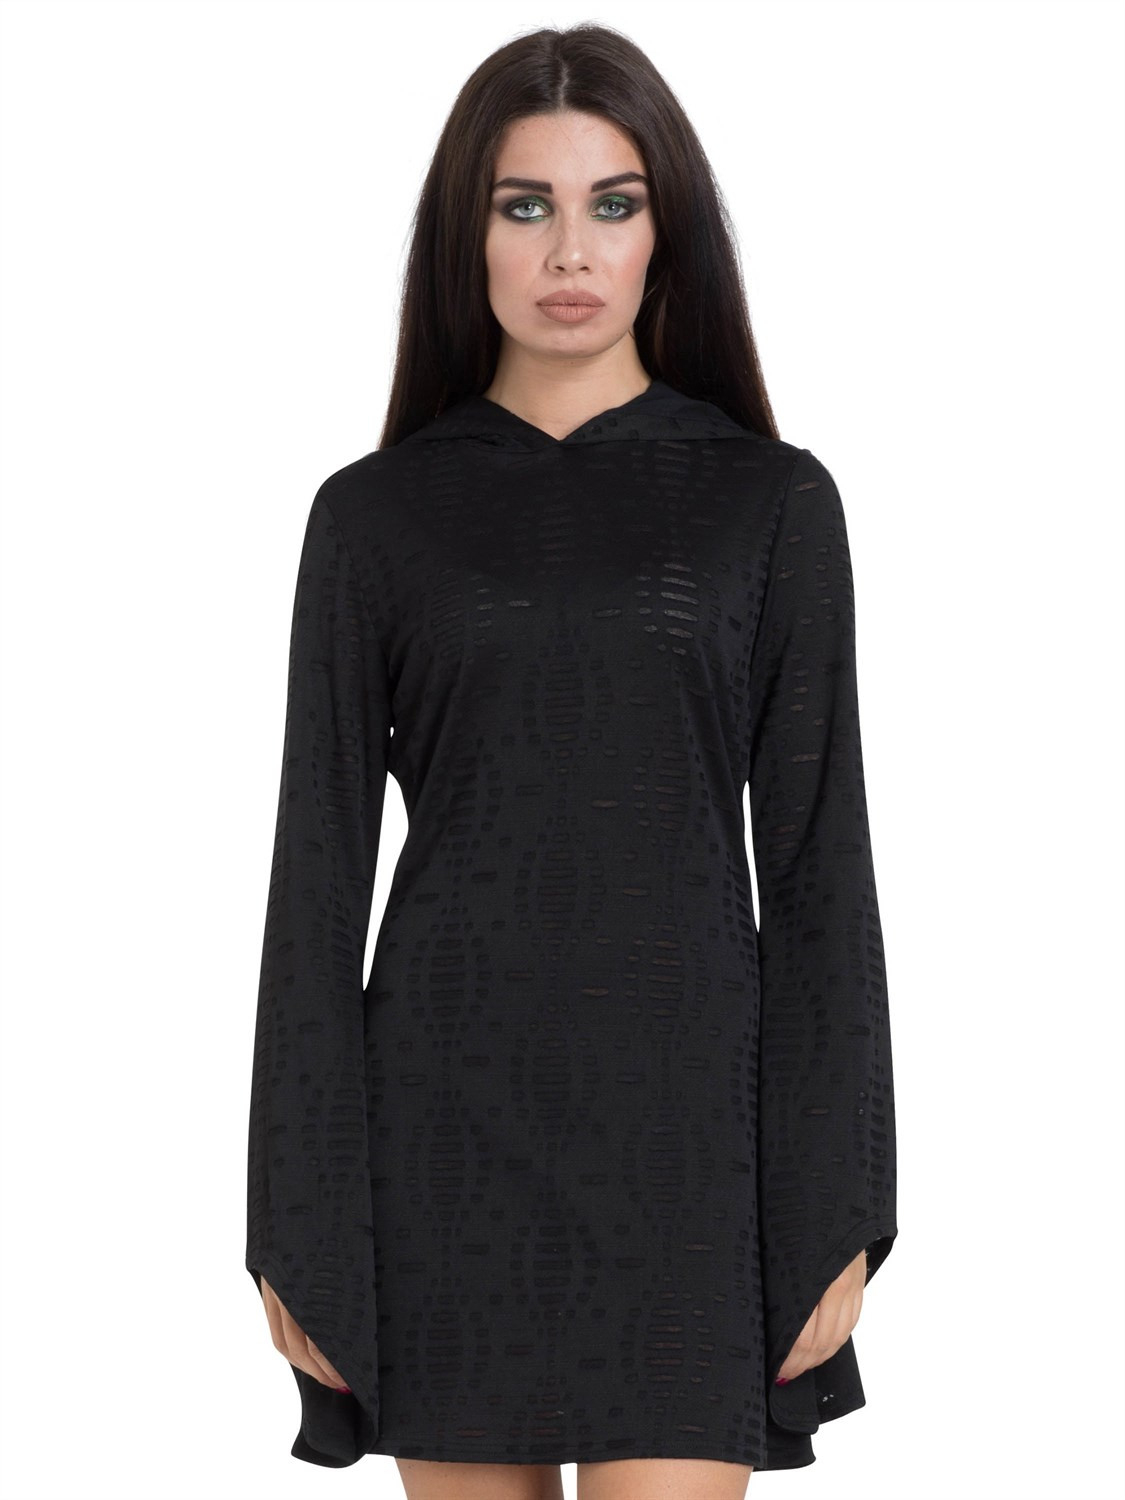 Jawbreaker Kleid Black Hoodie Dress 8545